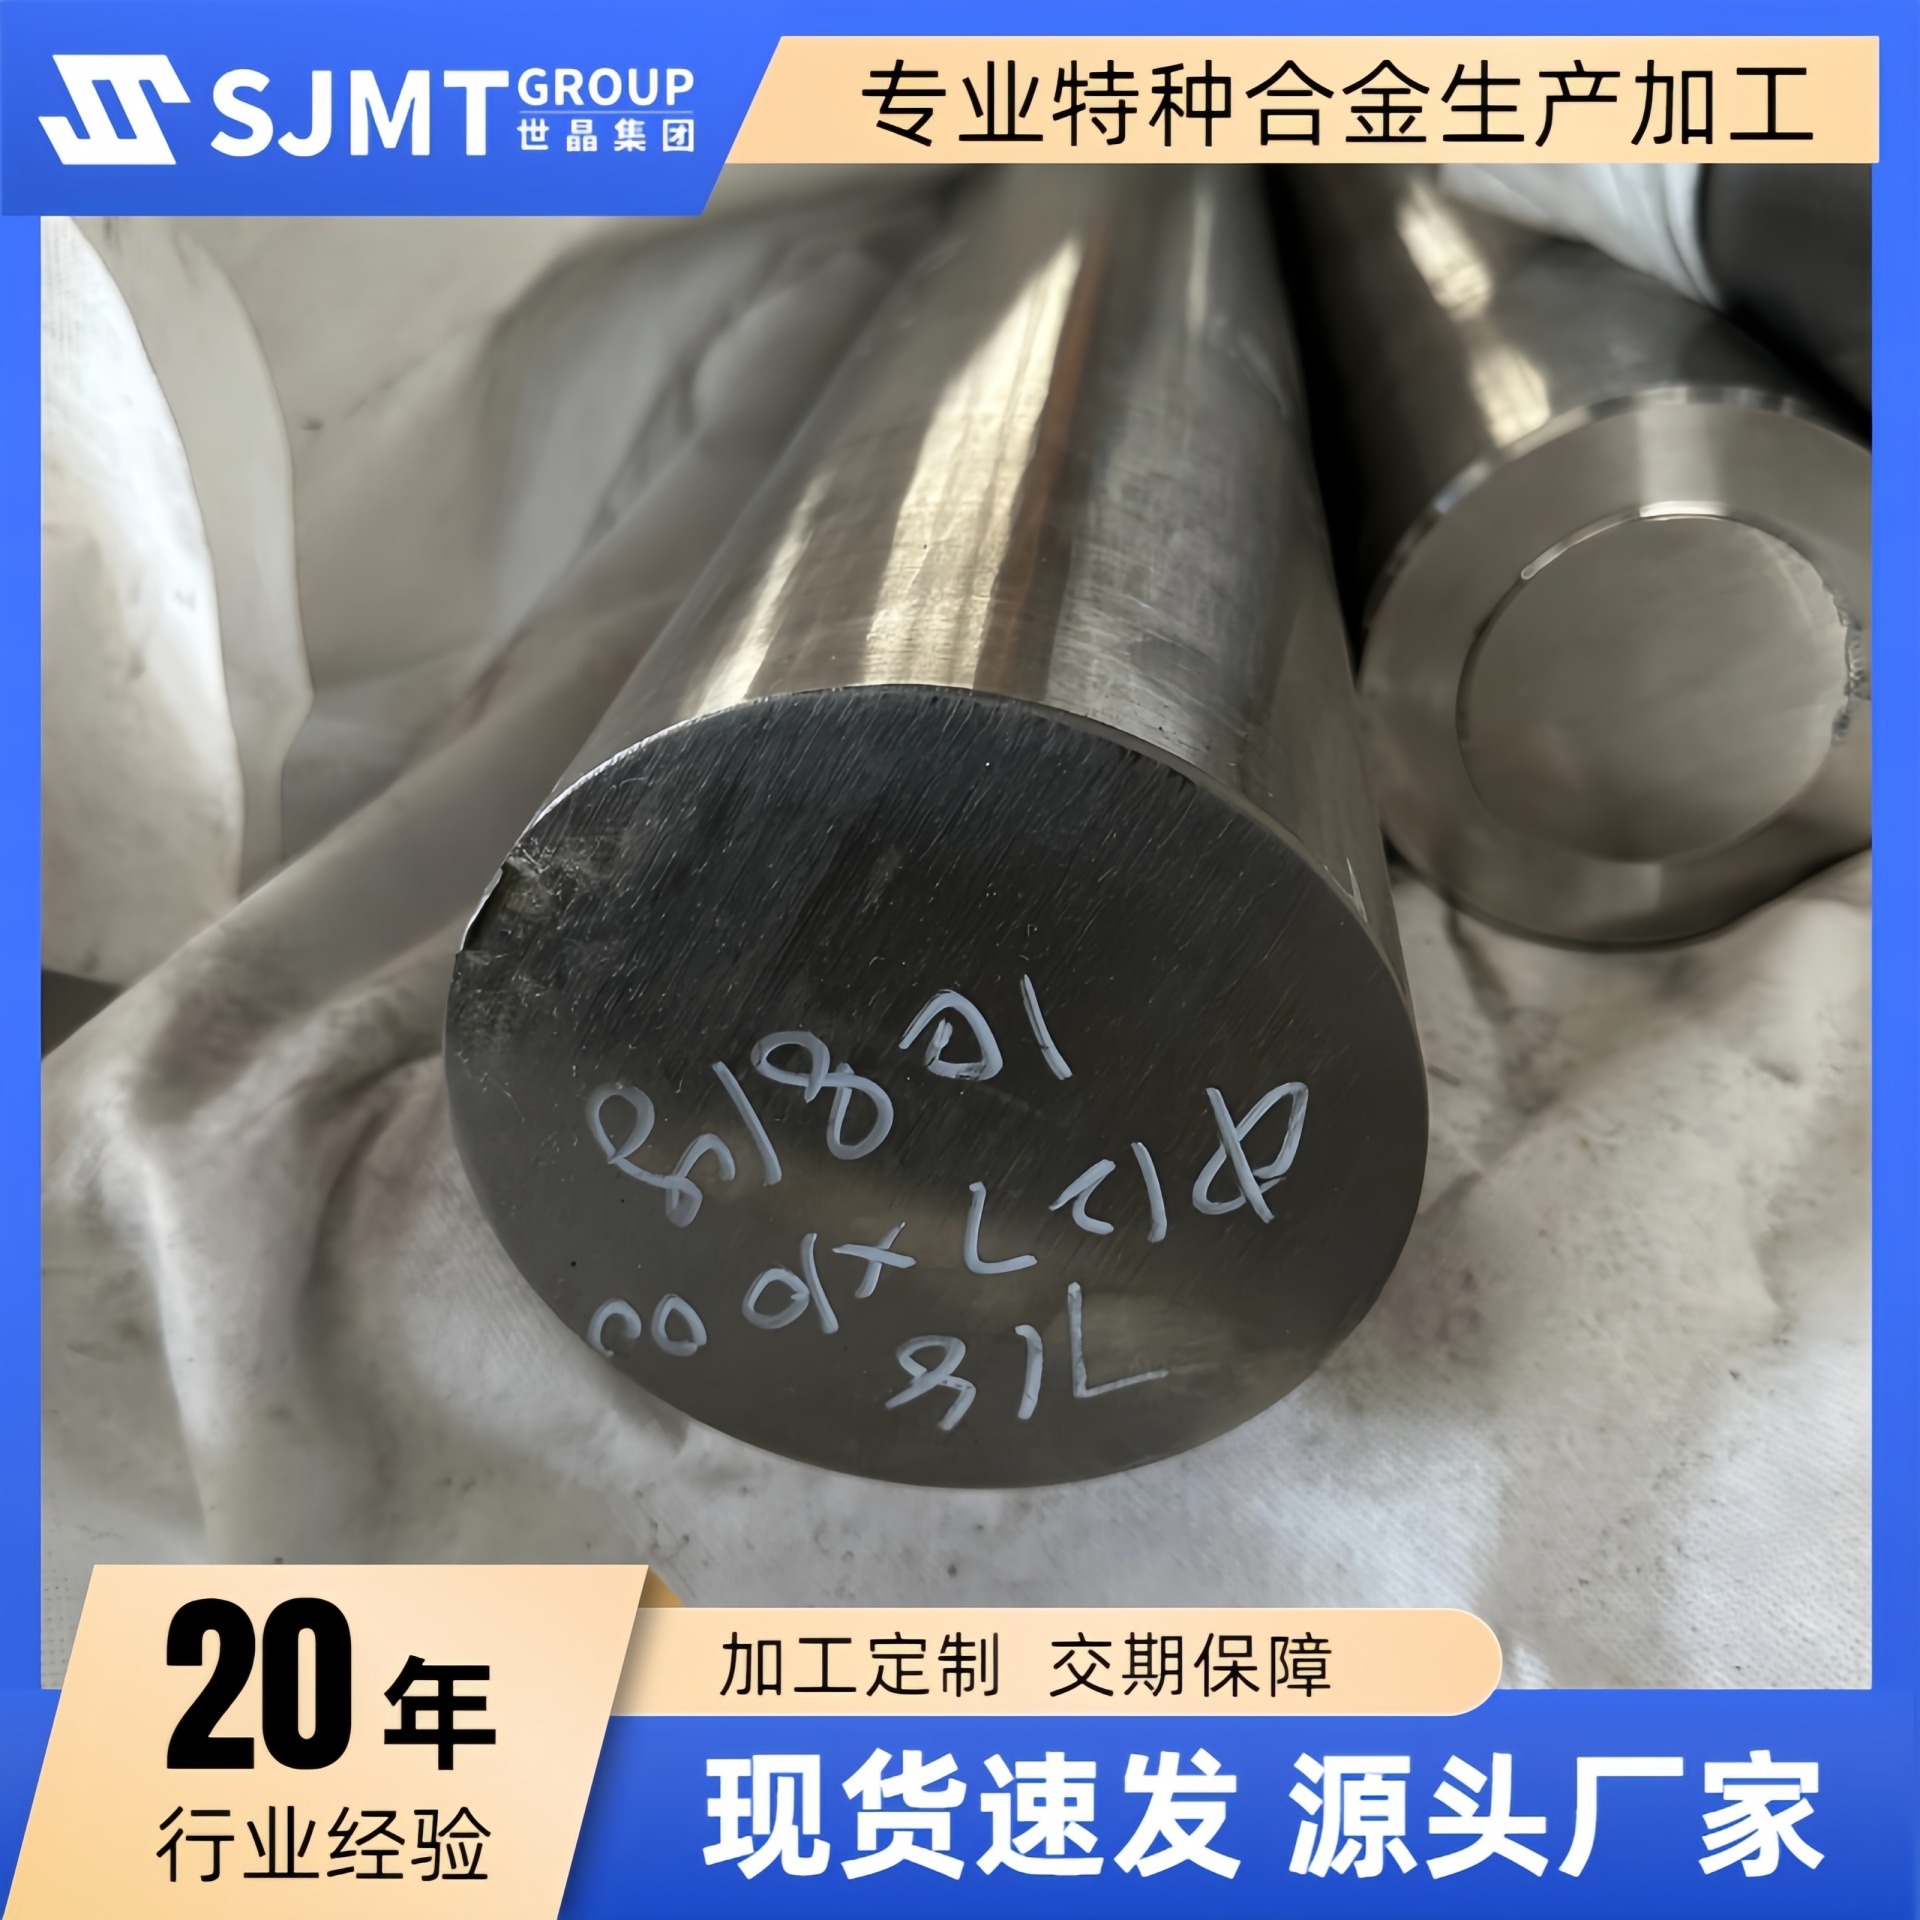 上海世晶金属厂家 专业供应2024-t4铝棒 高硬度无杂质2024-t4铝合金棒